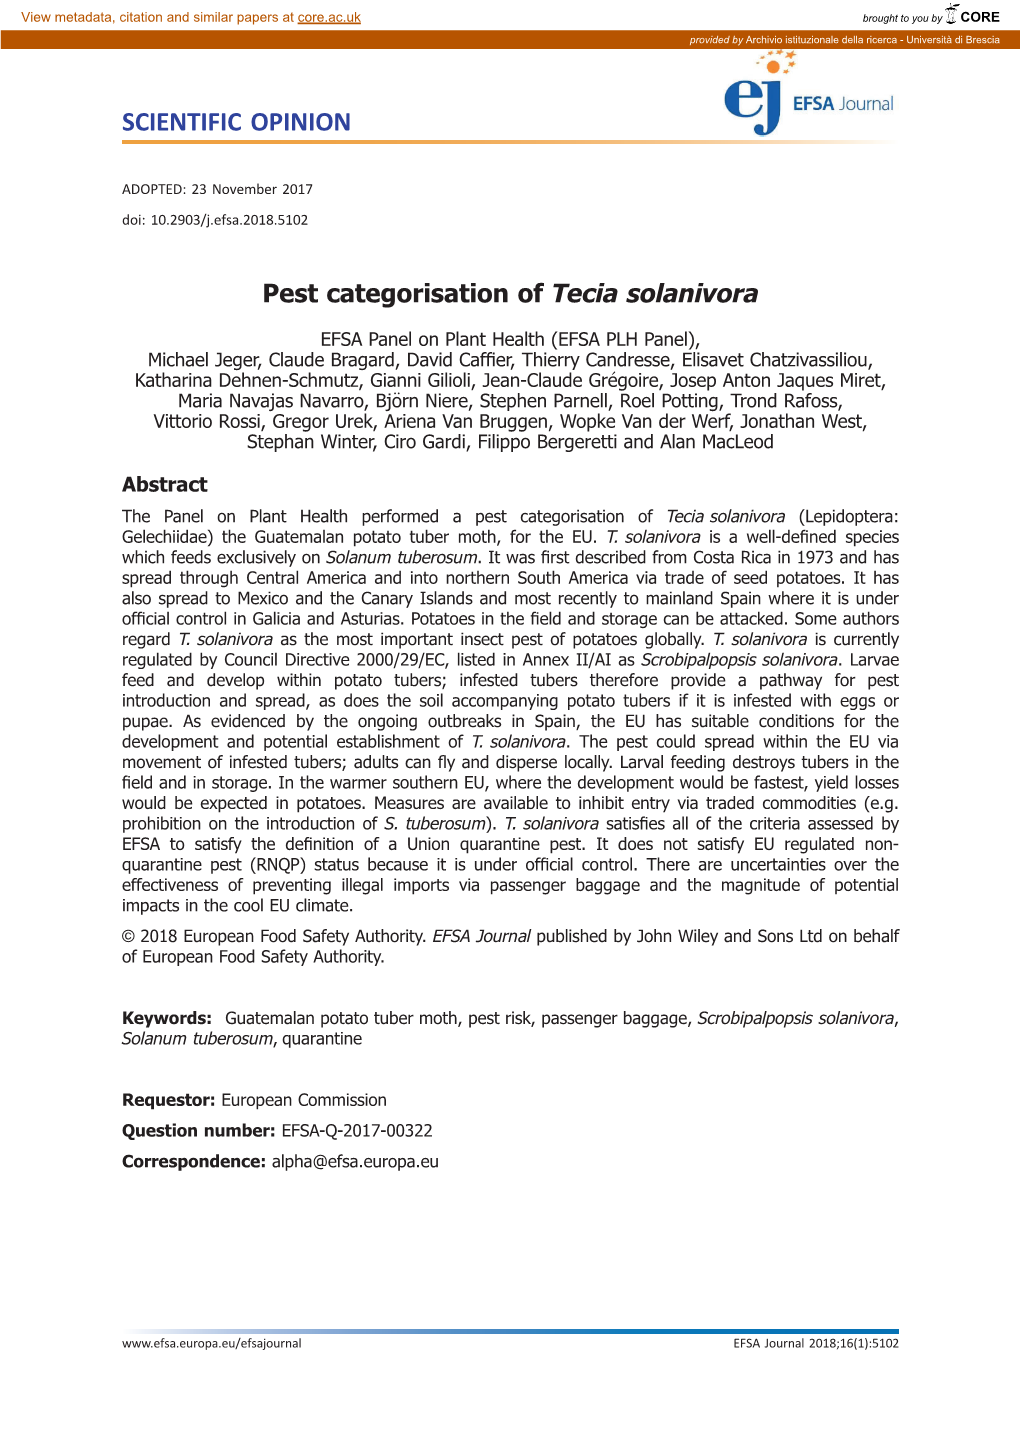 Pest Categorisation of Tecia Solanivora